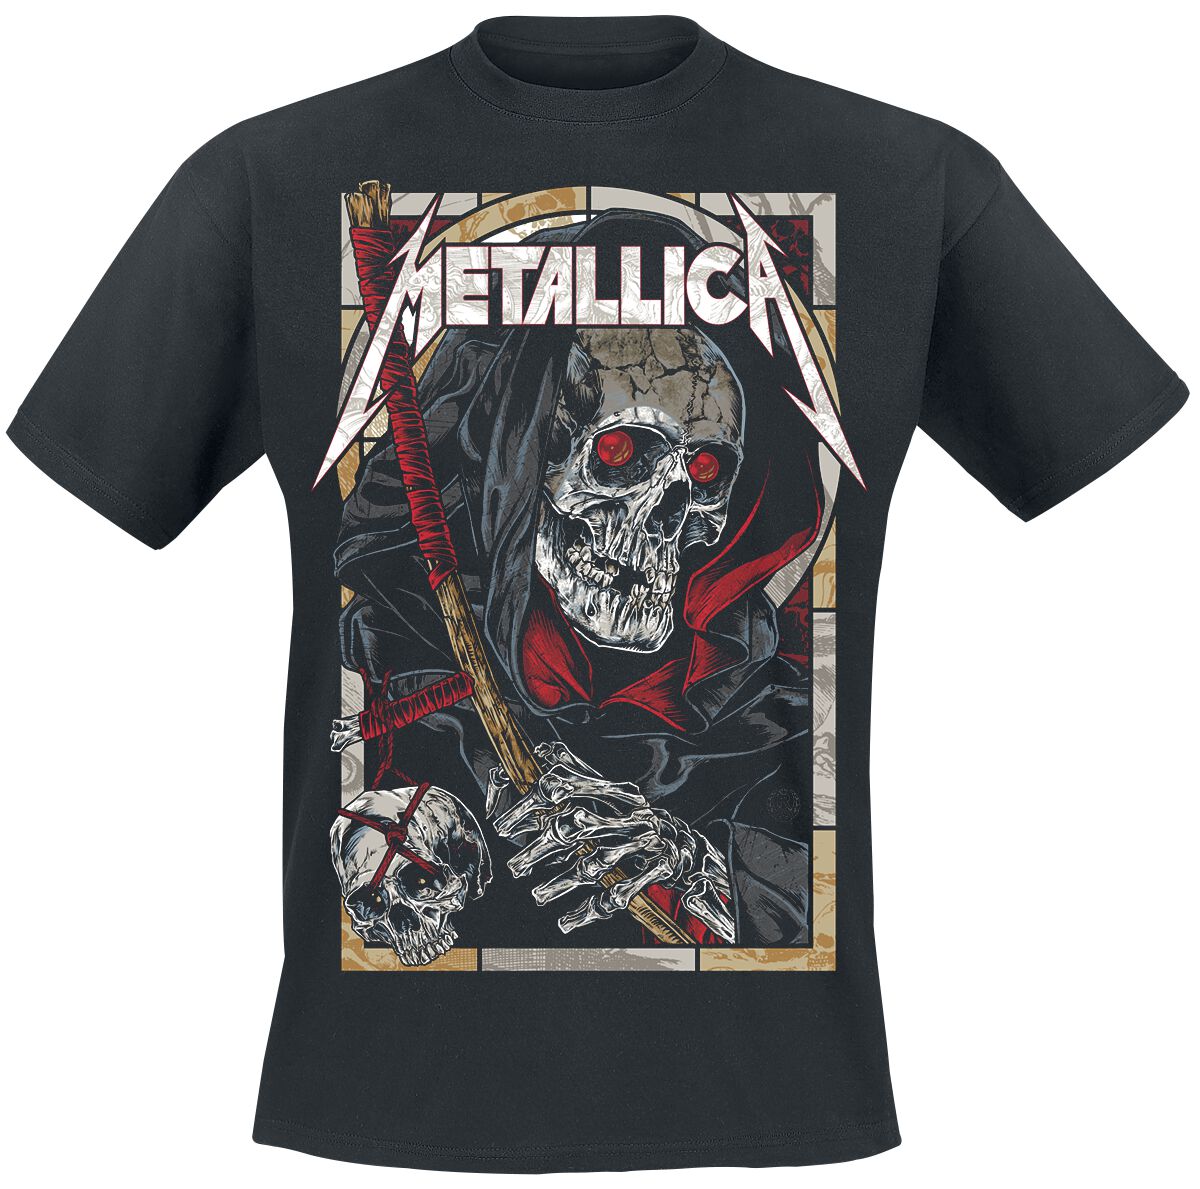 Metallica T-Shirt - Death Reaper - S bis 5XL - für Männer - Größe M - schwarz  - Lizenziertes Merchandise!